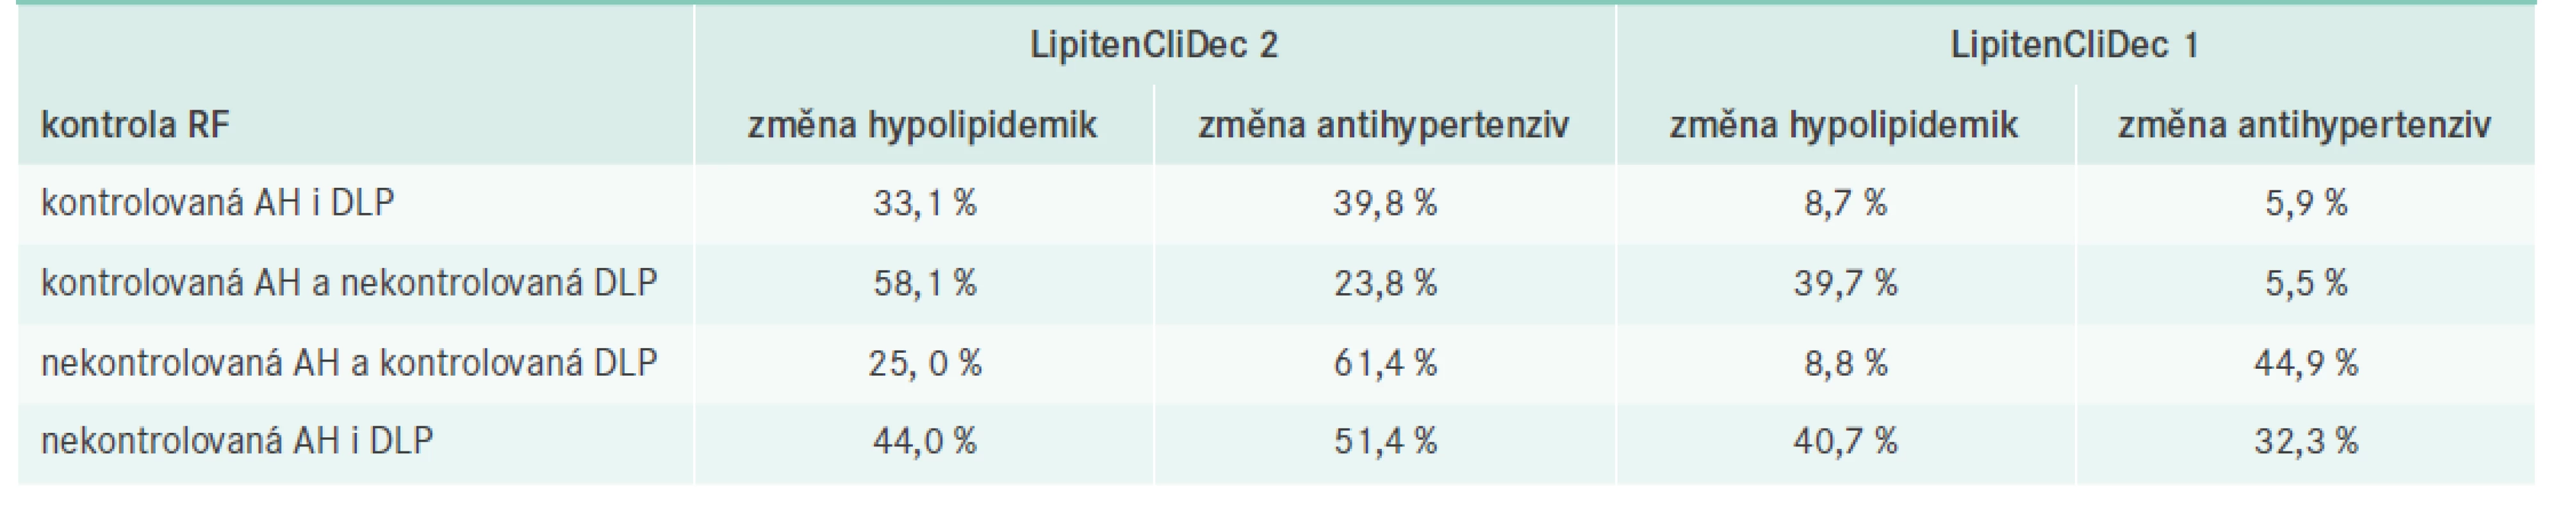 Přehled procentuální četnosti pacientů, u nichž byla změněna hypolipidemika/antihypertenziva při V1
v závislosti na kontrole AH/DLP, vztažené na celkový počet pacientů v dané skupině.
Upraveno podle [7,8]